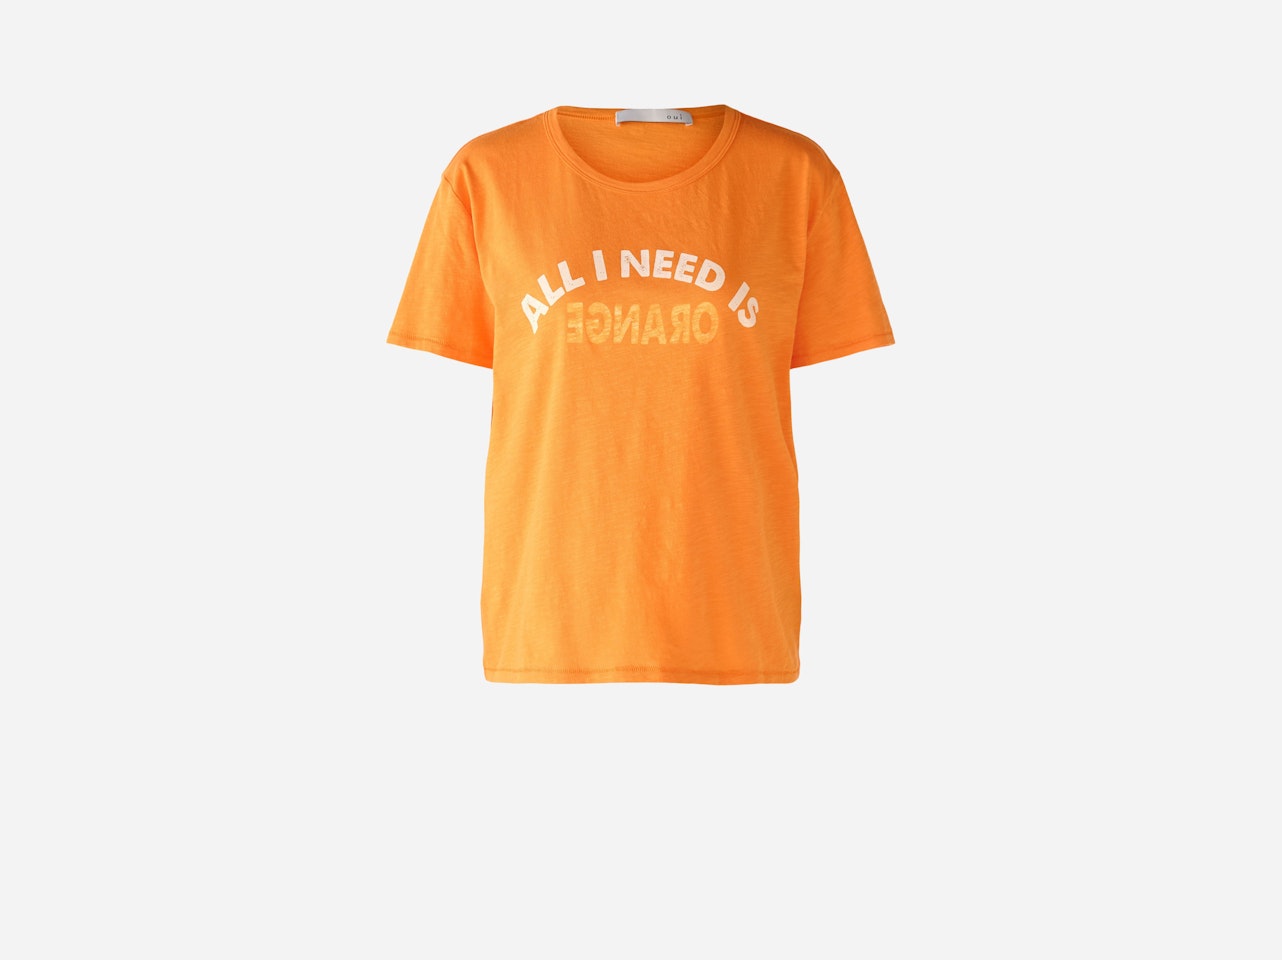 Bild 7 von T-shirt 100% cotton in flame orange | Oui